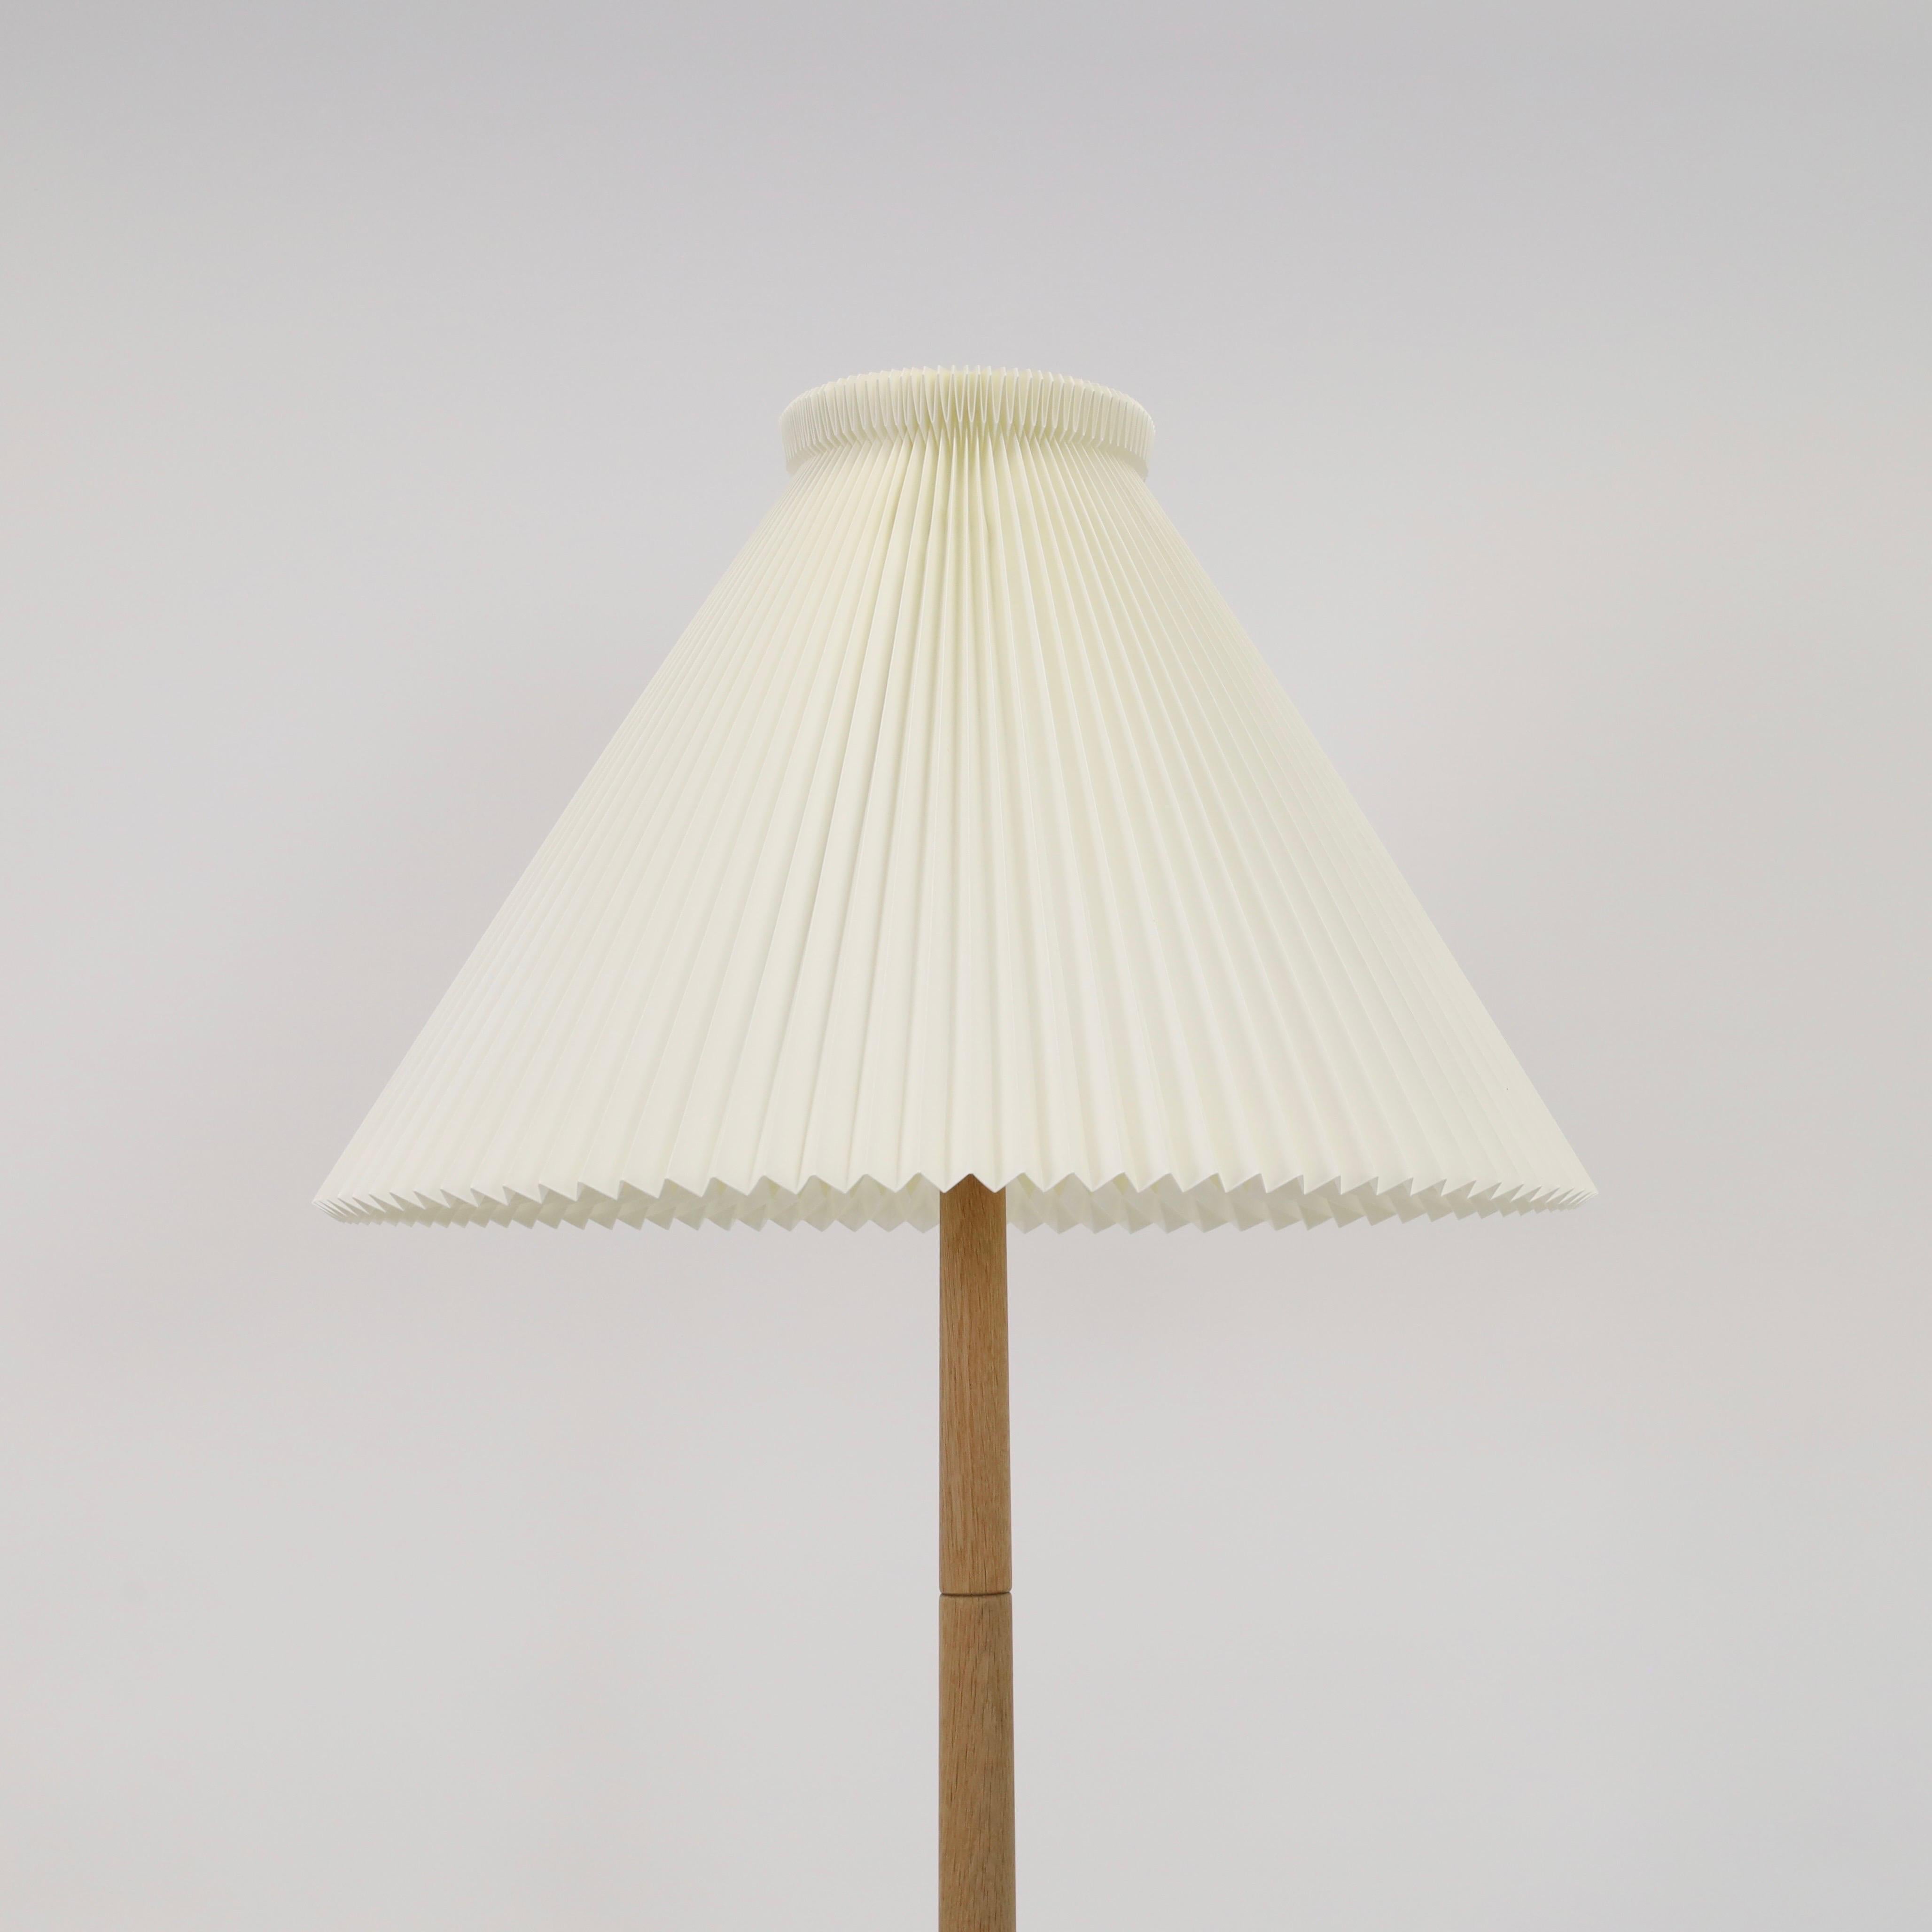 Danish Modern oak wood floor lamp by Lisbeth Brams, 1960s, Denmark For Sale 1